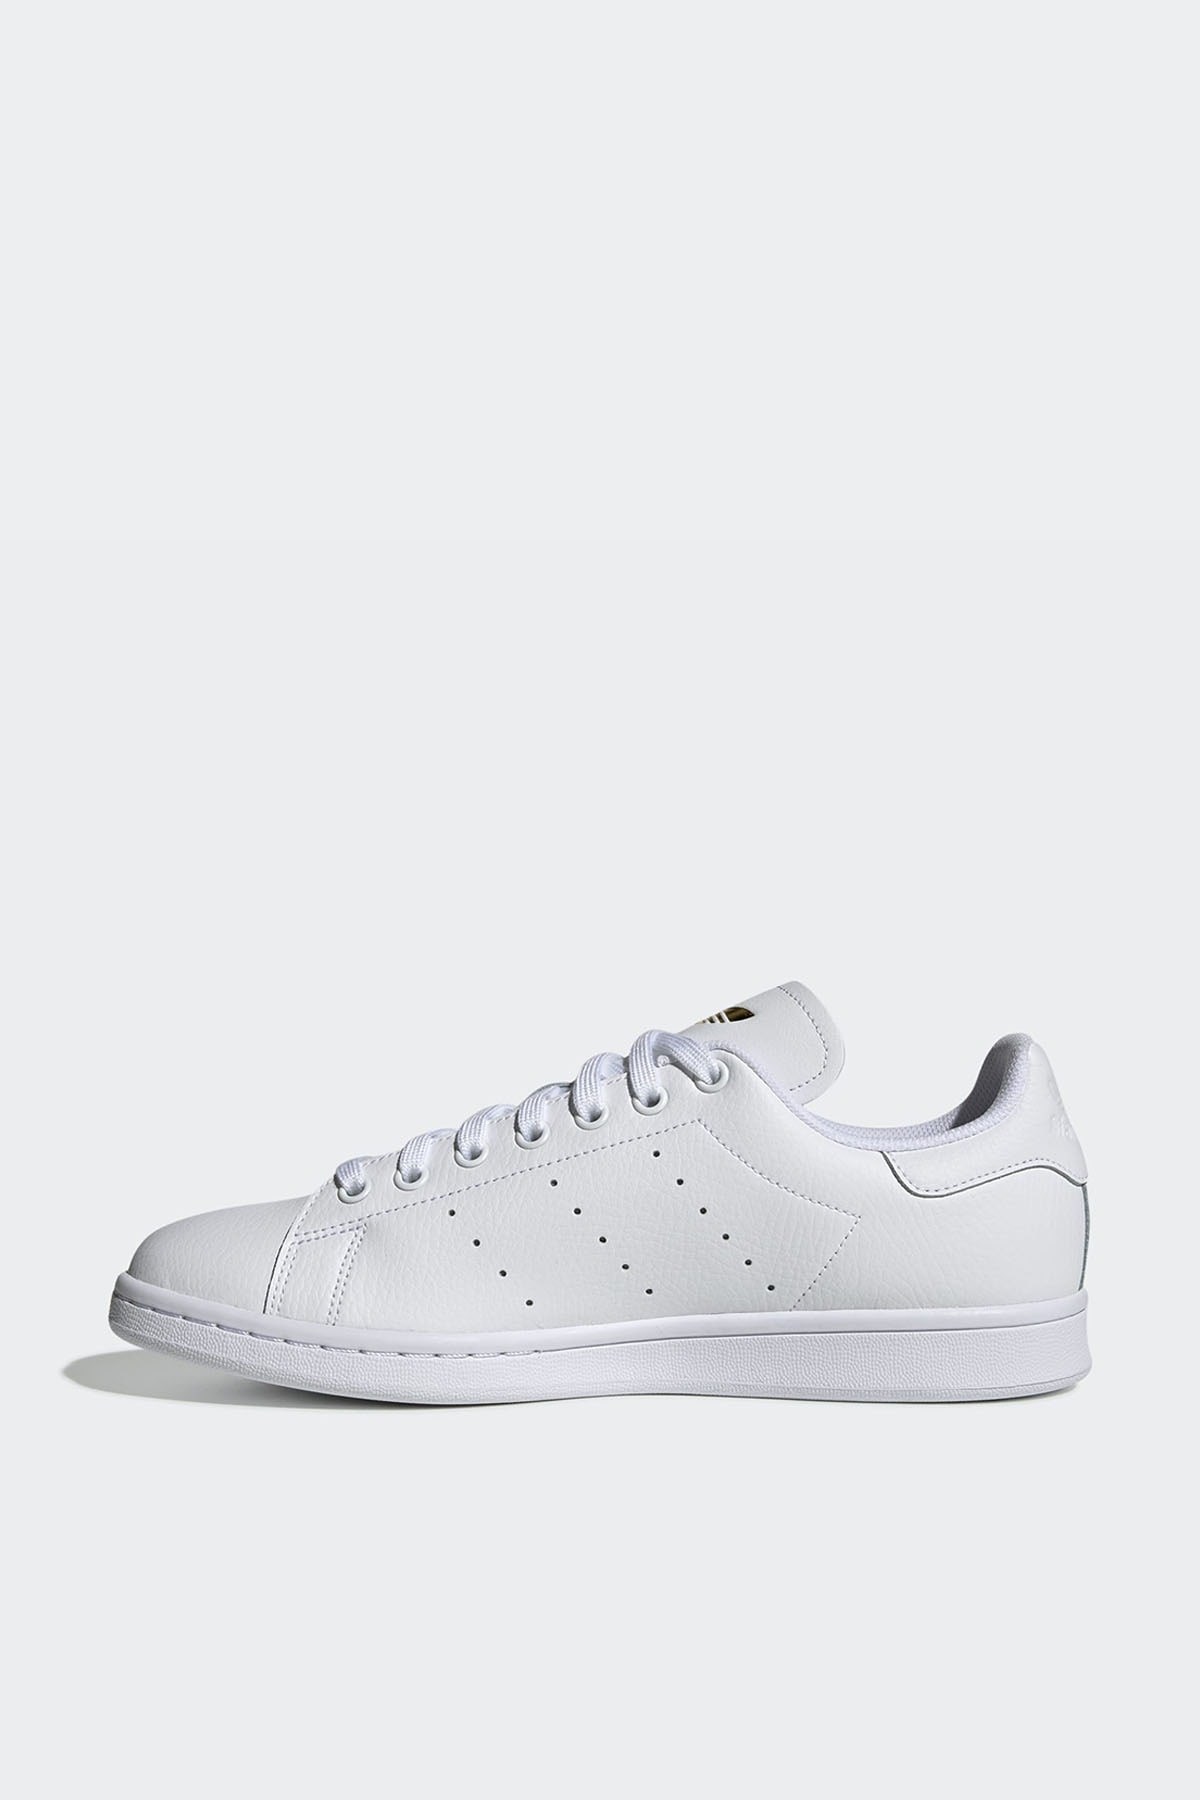 Adidas Stan Smith Kadın Beyaz Sneaker Spor Ayakkabı FU9193